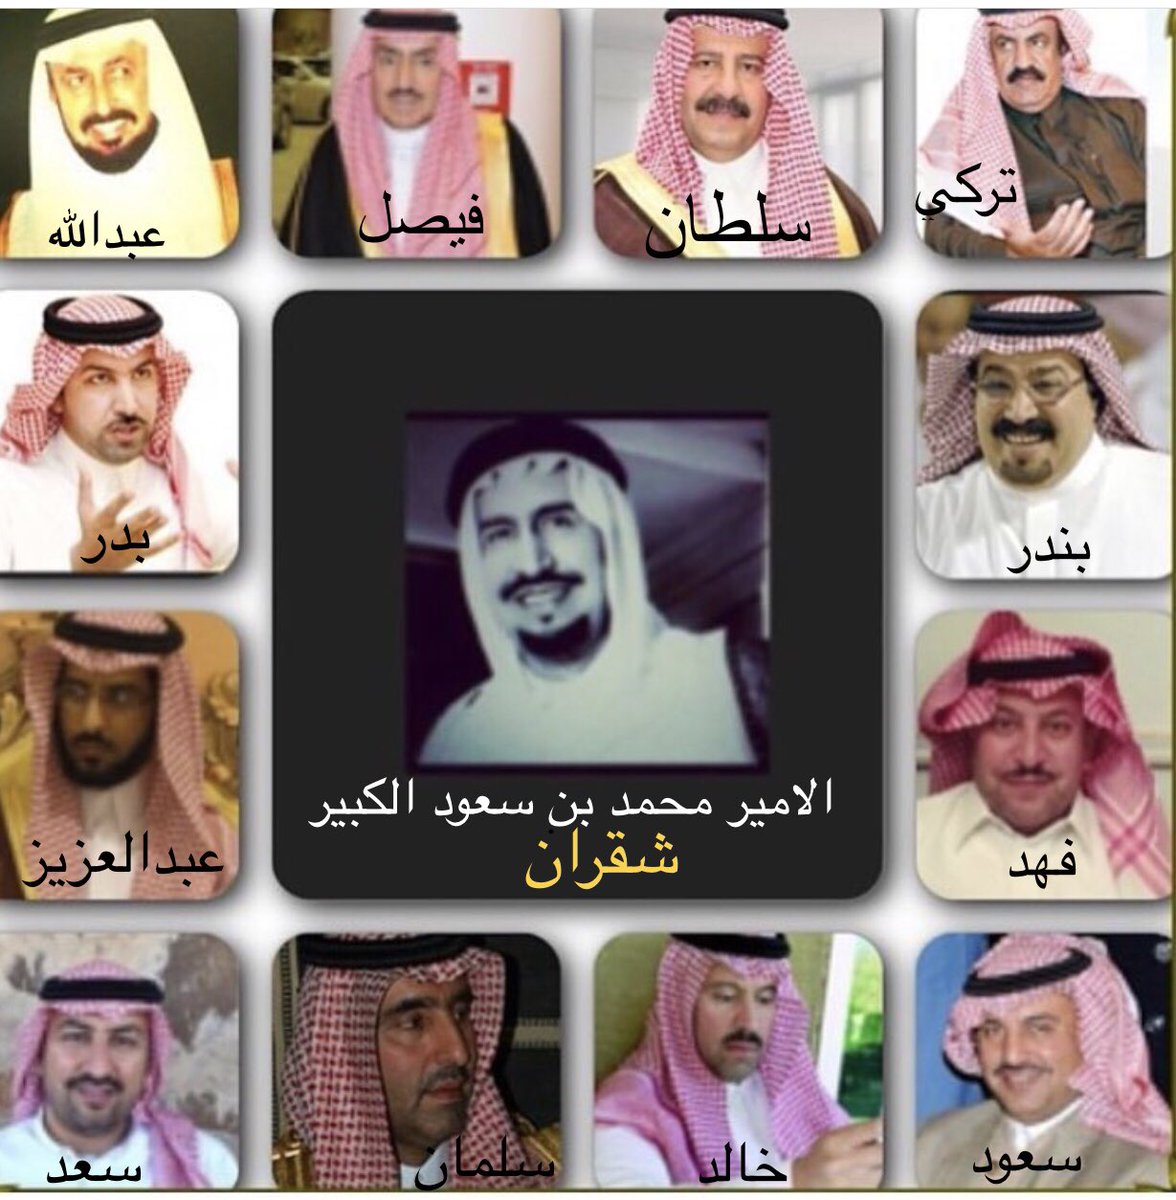 بن الامير الكبير سعود محمد بن فهد وفاة الأمير